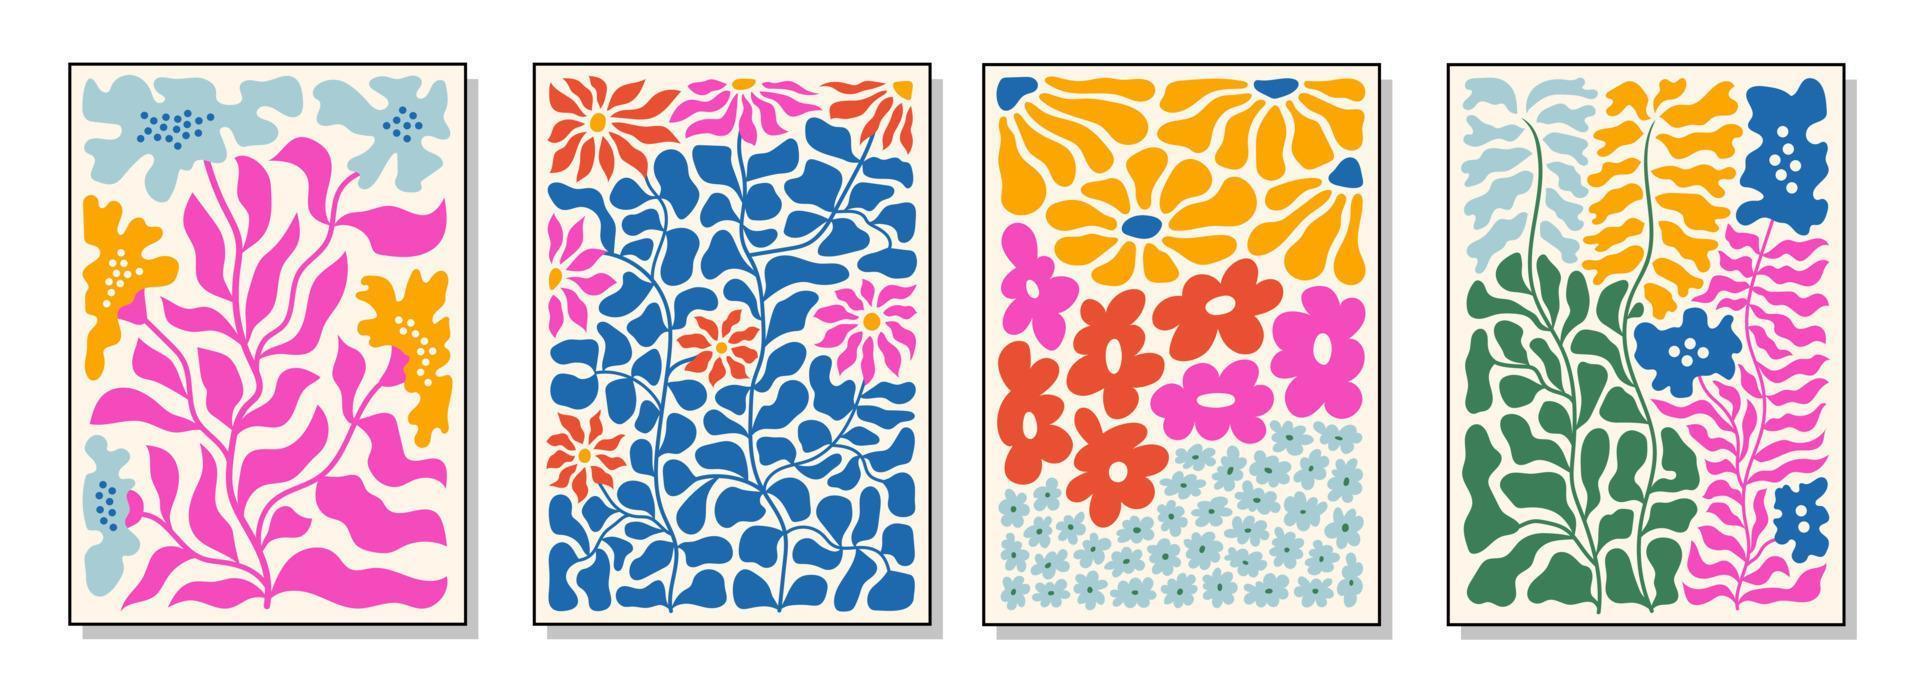 Reihe von Blumensträußen. Innenanstrich. farbenfrohe Illustrationen von Blumen für Cover, Bilder. Vektor-Illustration. vektor